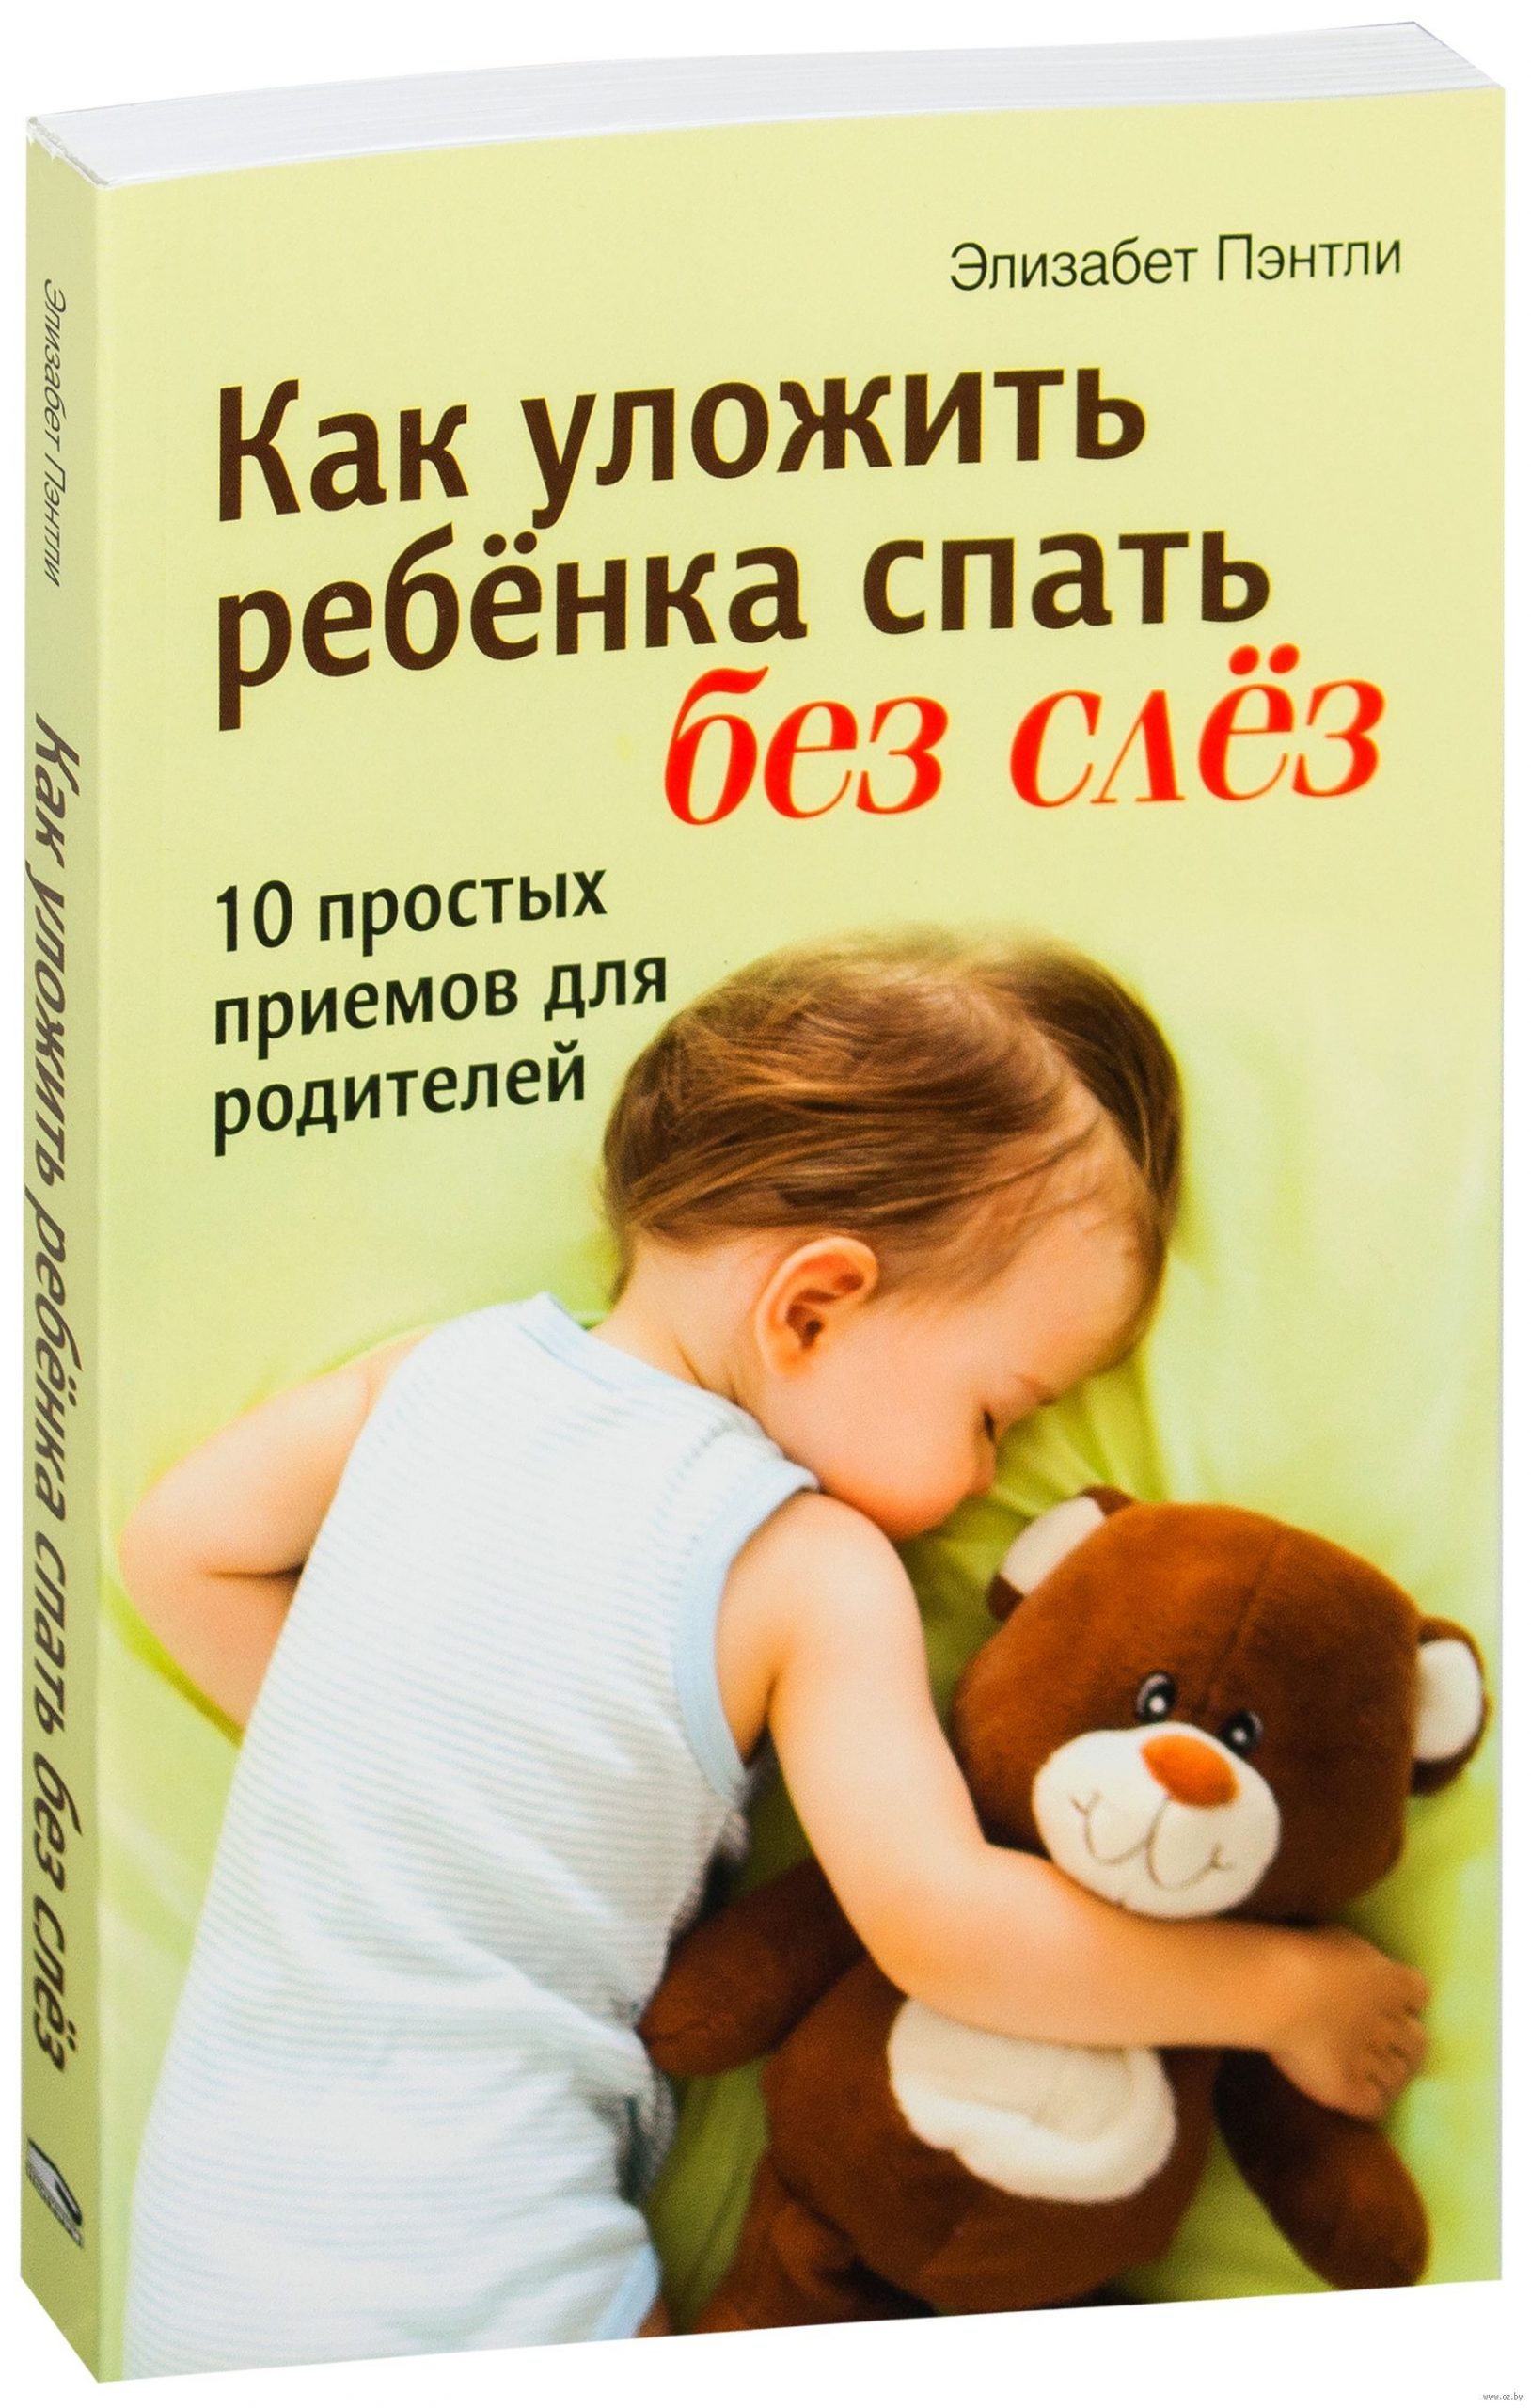 Обойдемся без истерик: 6 советов, как быстро уложить ребенка спать - мамазонка